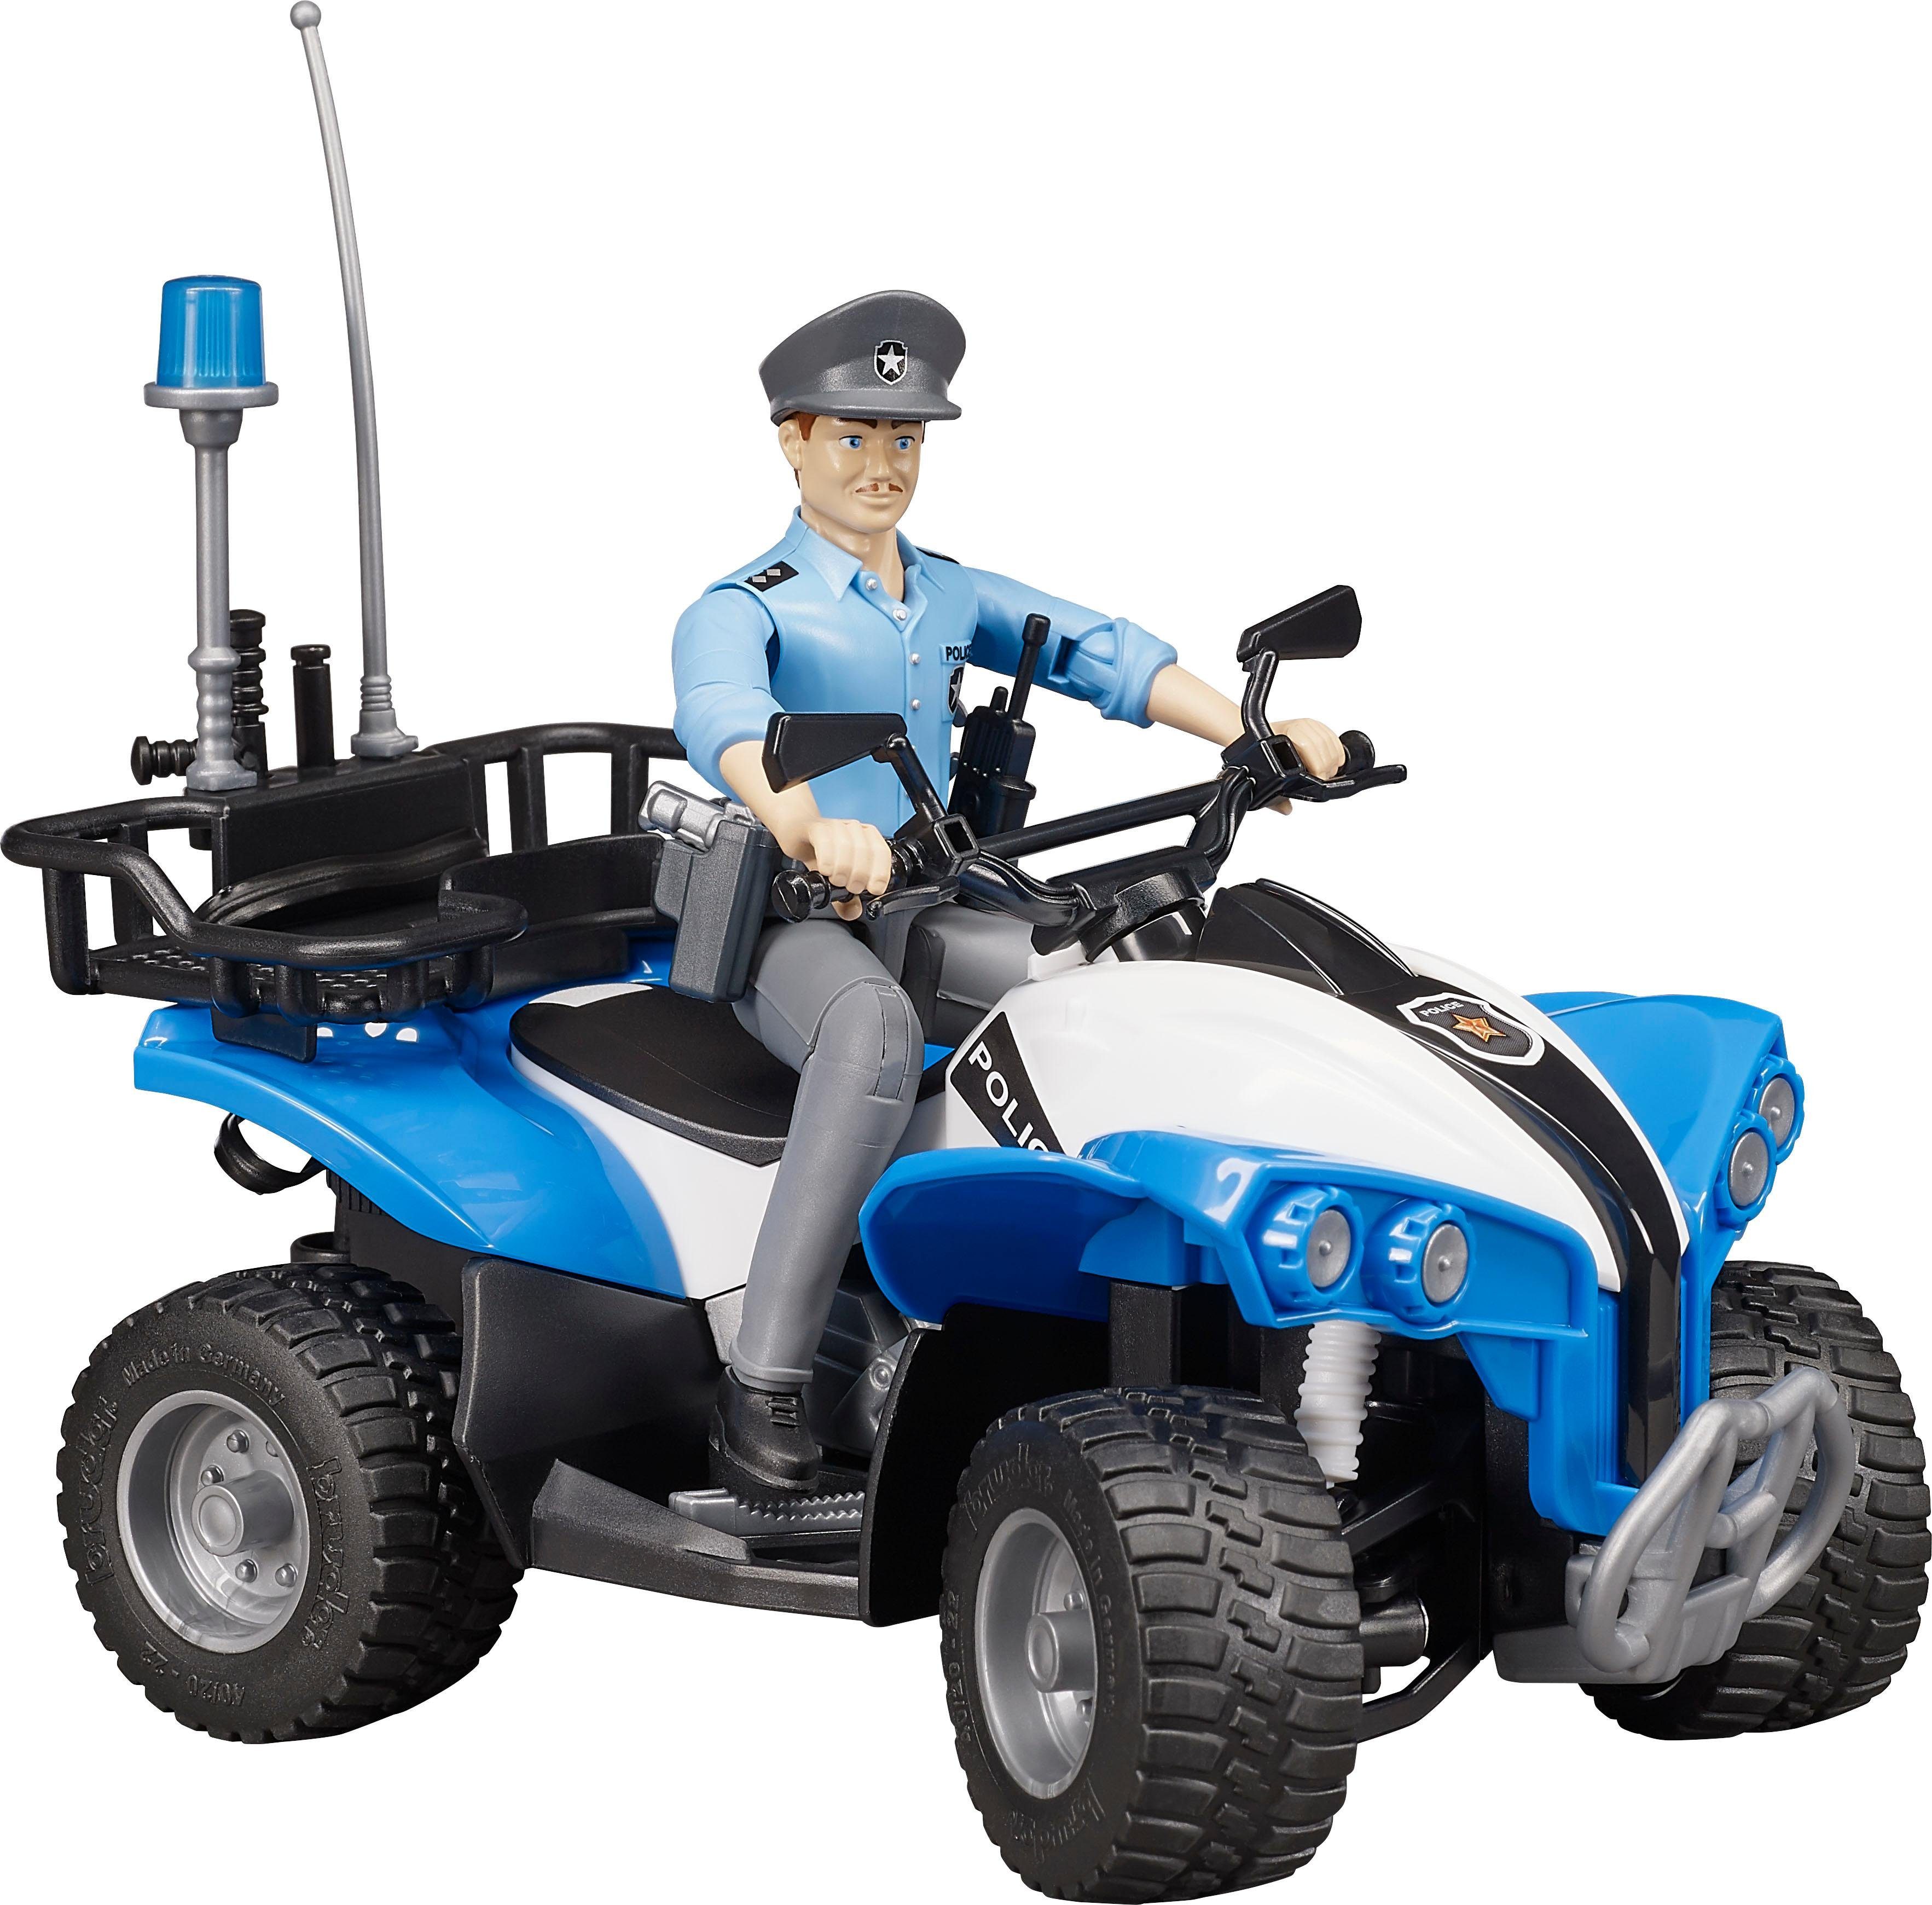 Image of BRUDER 63010 bworld Polizei Quad mit Figur und Ausstattung